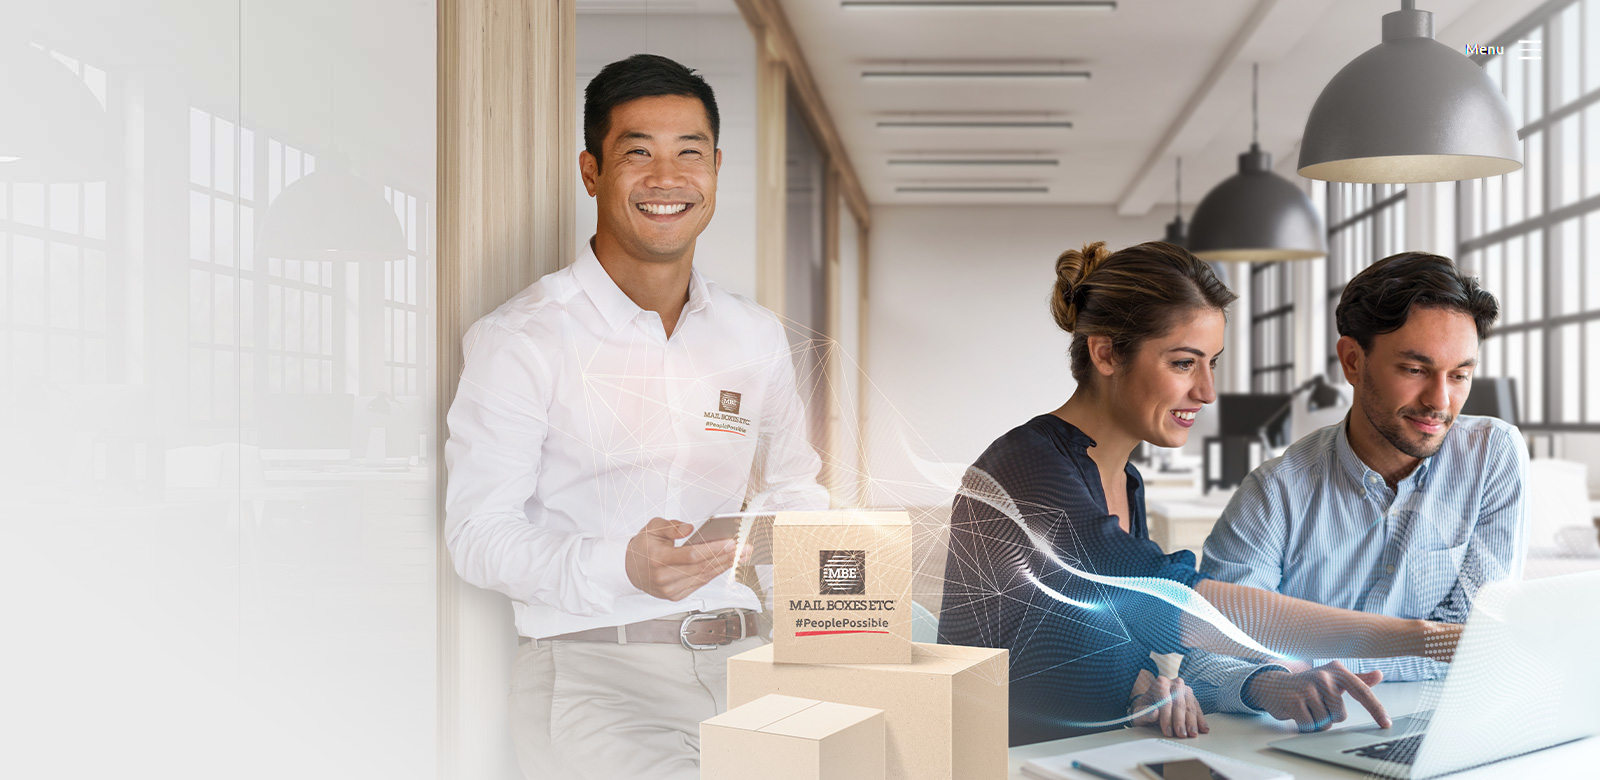 Imagen ilustrativa de un trabajador MBE, con cajas mbe a modo ilustrativo y una pareja de emprendedores llevando a cabo su negocio